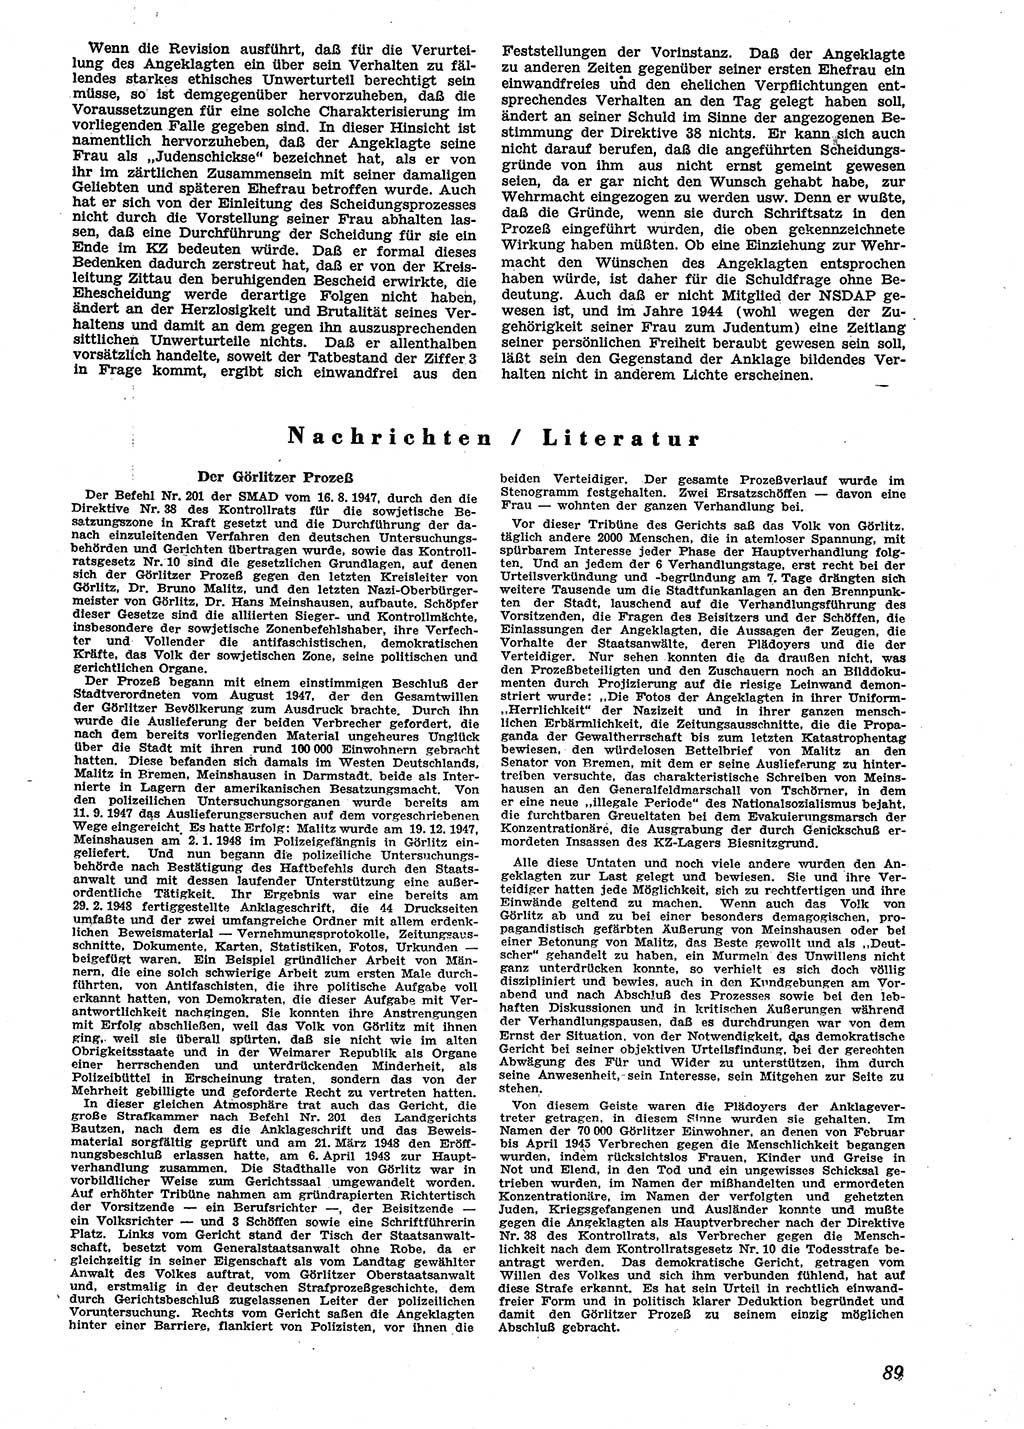 Neue Justiz (NJ), Zeitschrift für Recht und Rechtswissenschaft [Sowjetische Besatzungszone (SBZ) Deutschland], 2. Jahrgang 1948, Seite 89 (NJ SBZ Dtl. 1948, S. 89)